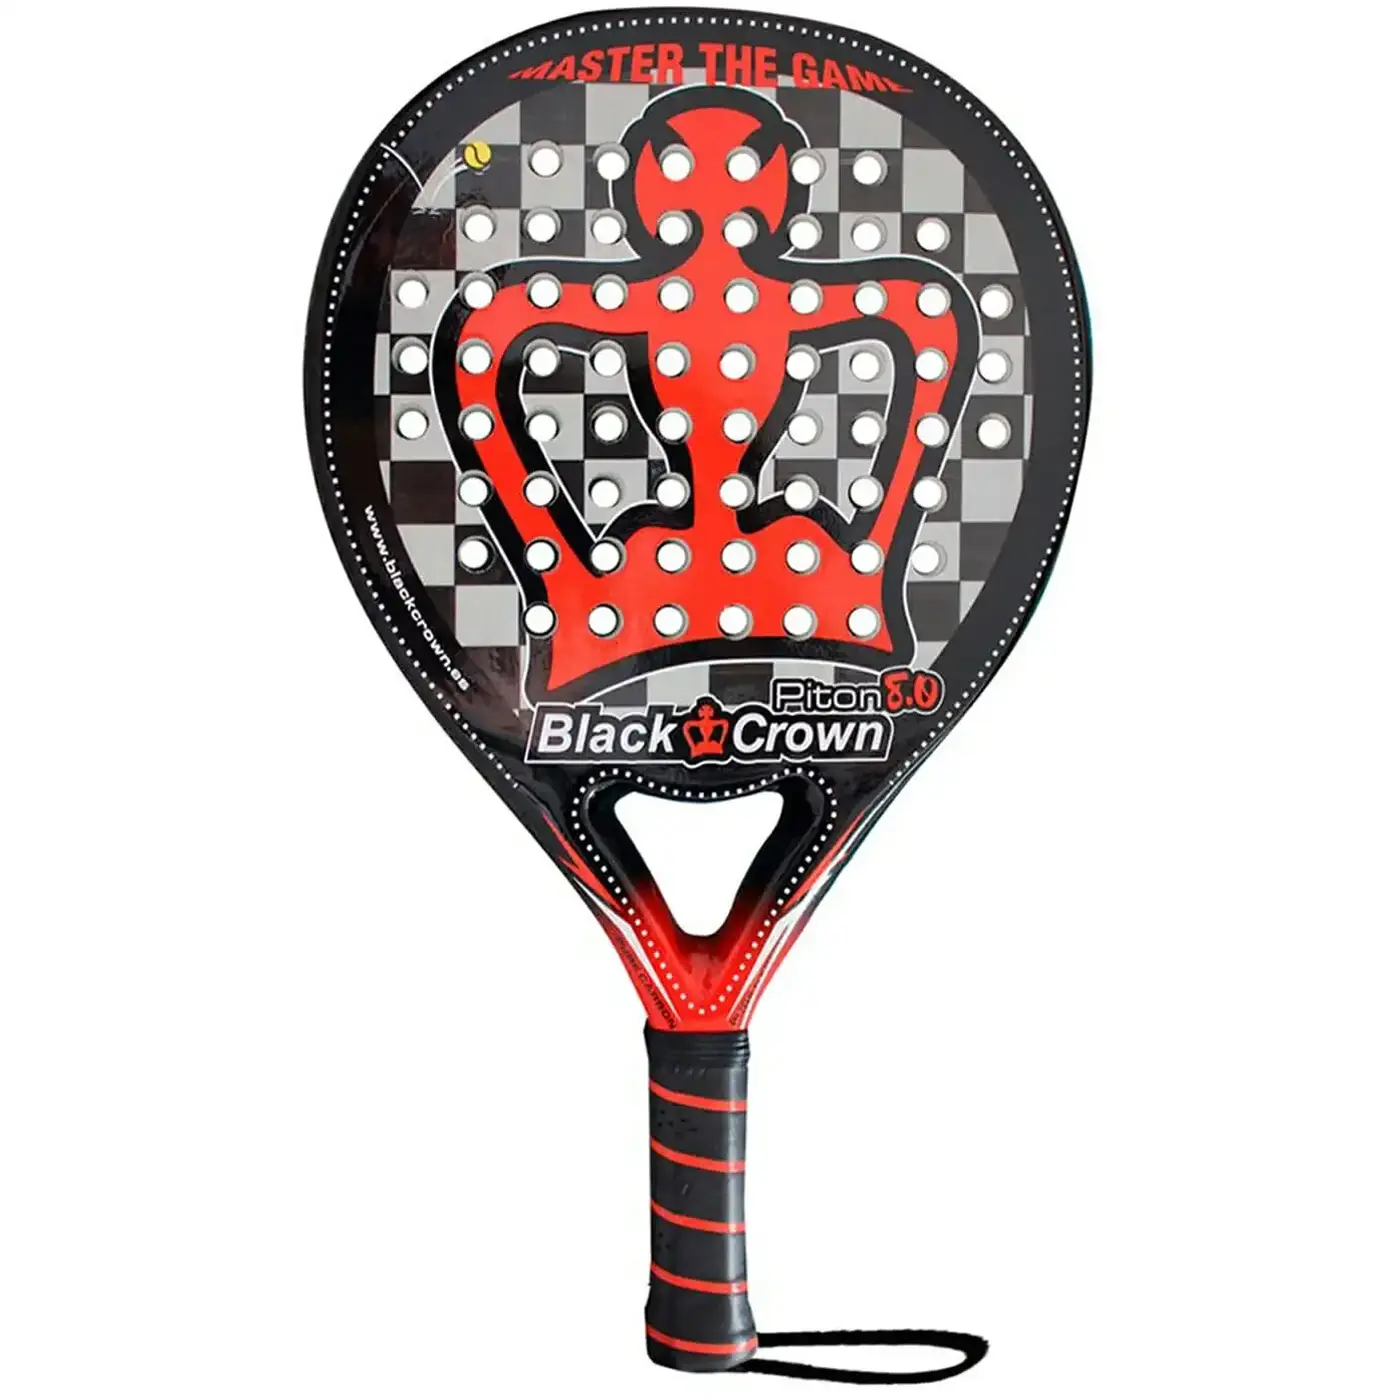 Black Crown Piton 8.0 Padel Racket, Paddle rackets. Image 1